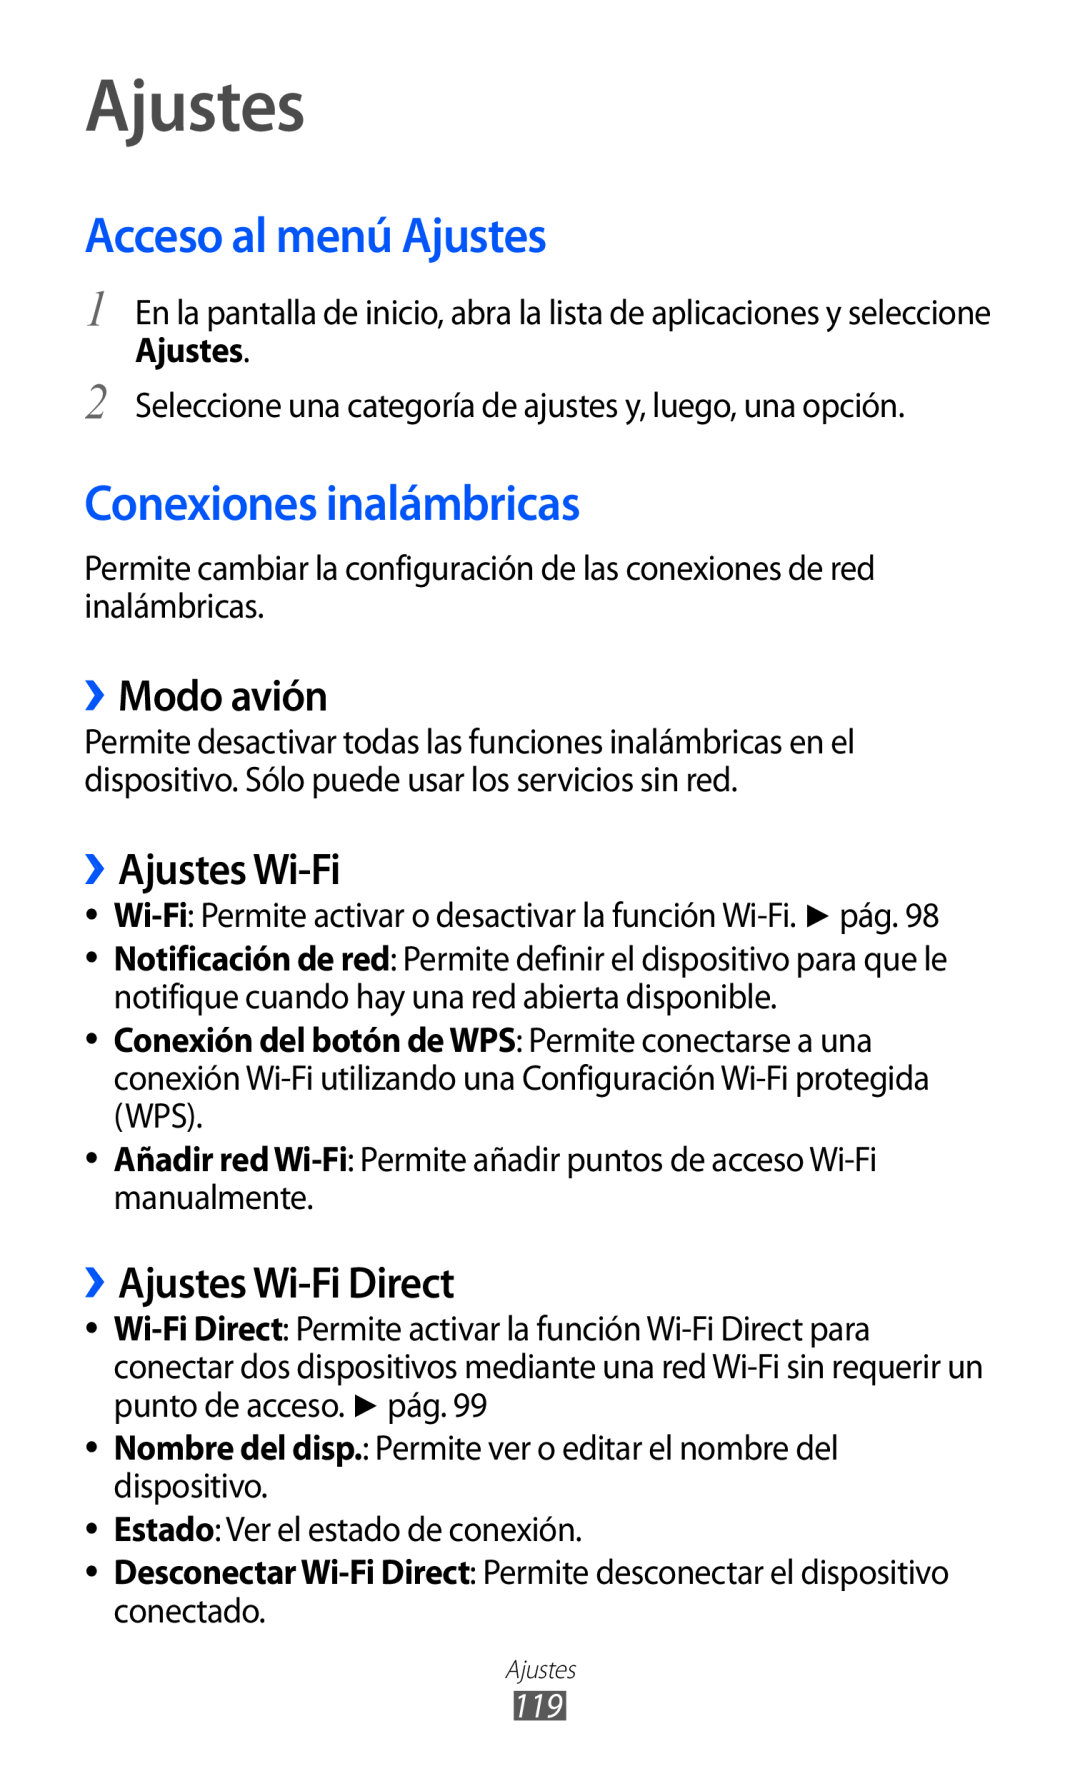 Samsung GT-S6500ZYAITV, GT-S6500RWDTMN Acceso al menú Ajustes, Conexiones inalámbricas, ››Modo avión, ››Ajustes Wi-Fi 